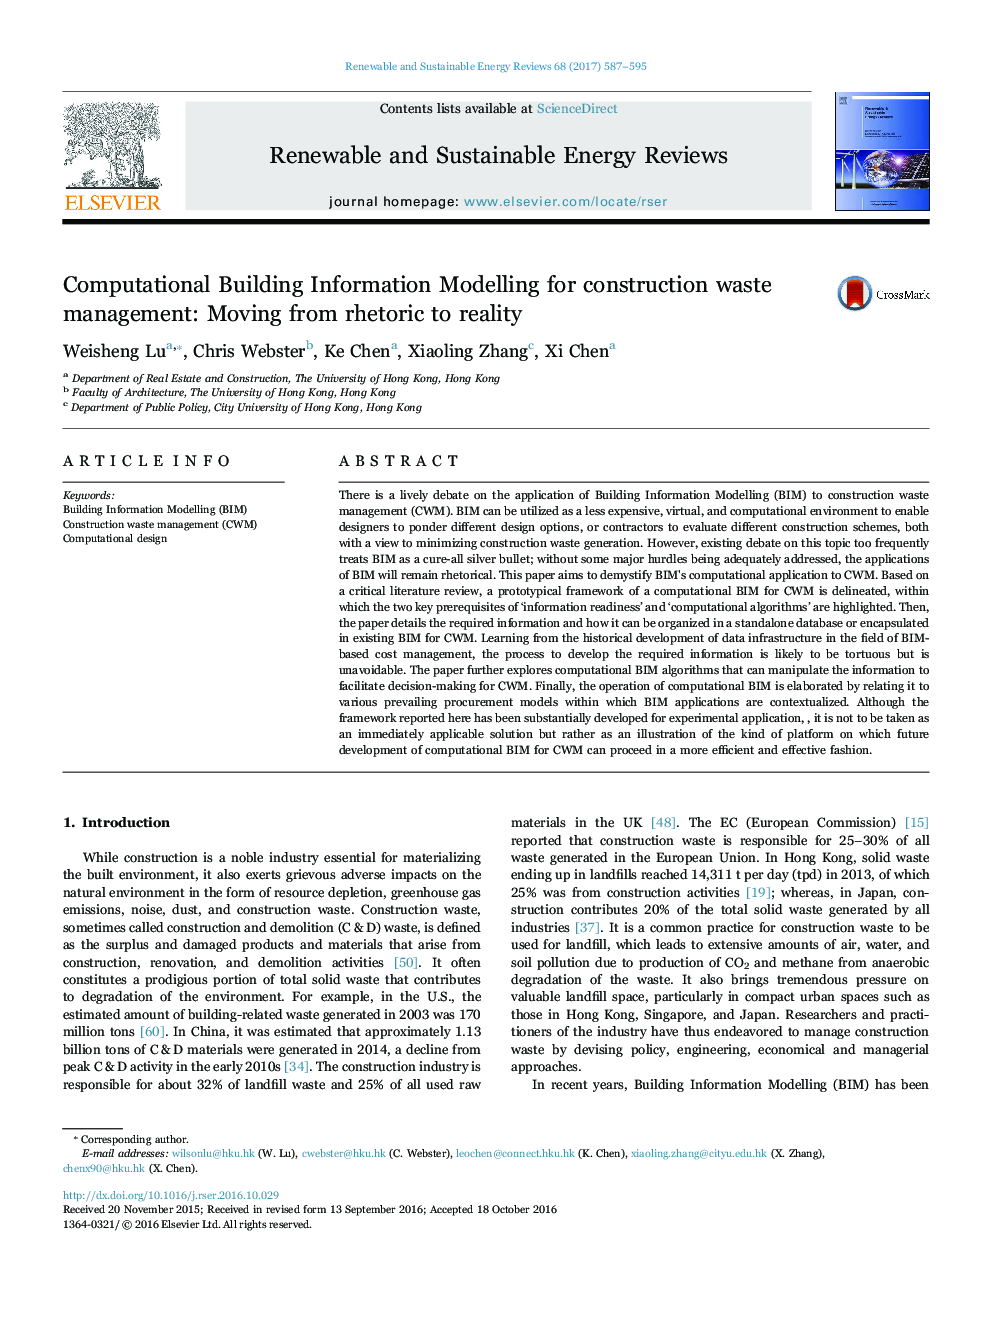 مدل سازی اطلاعات محاسباتی برای مدیریت زباله های ساختمانی: حرکت از لفاظی به واقعیت 